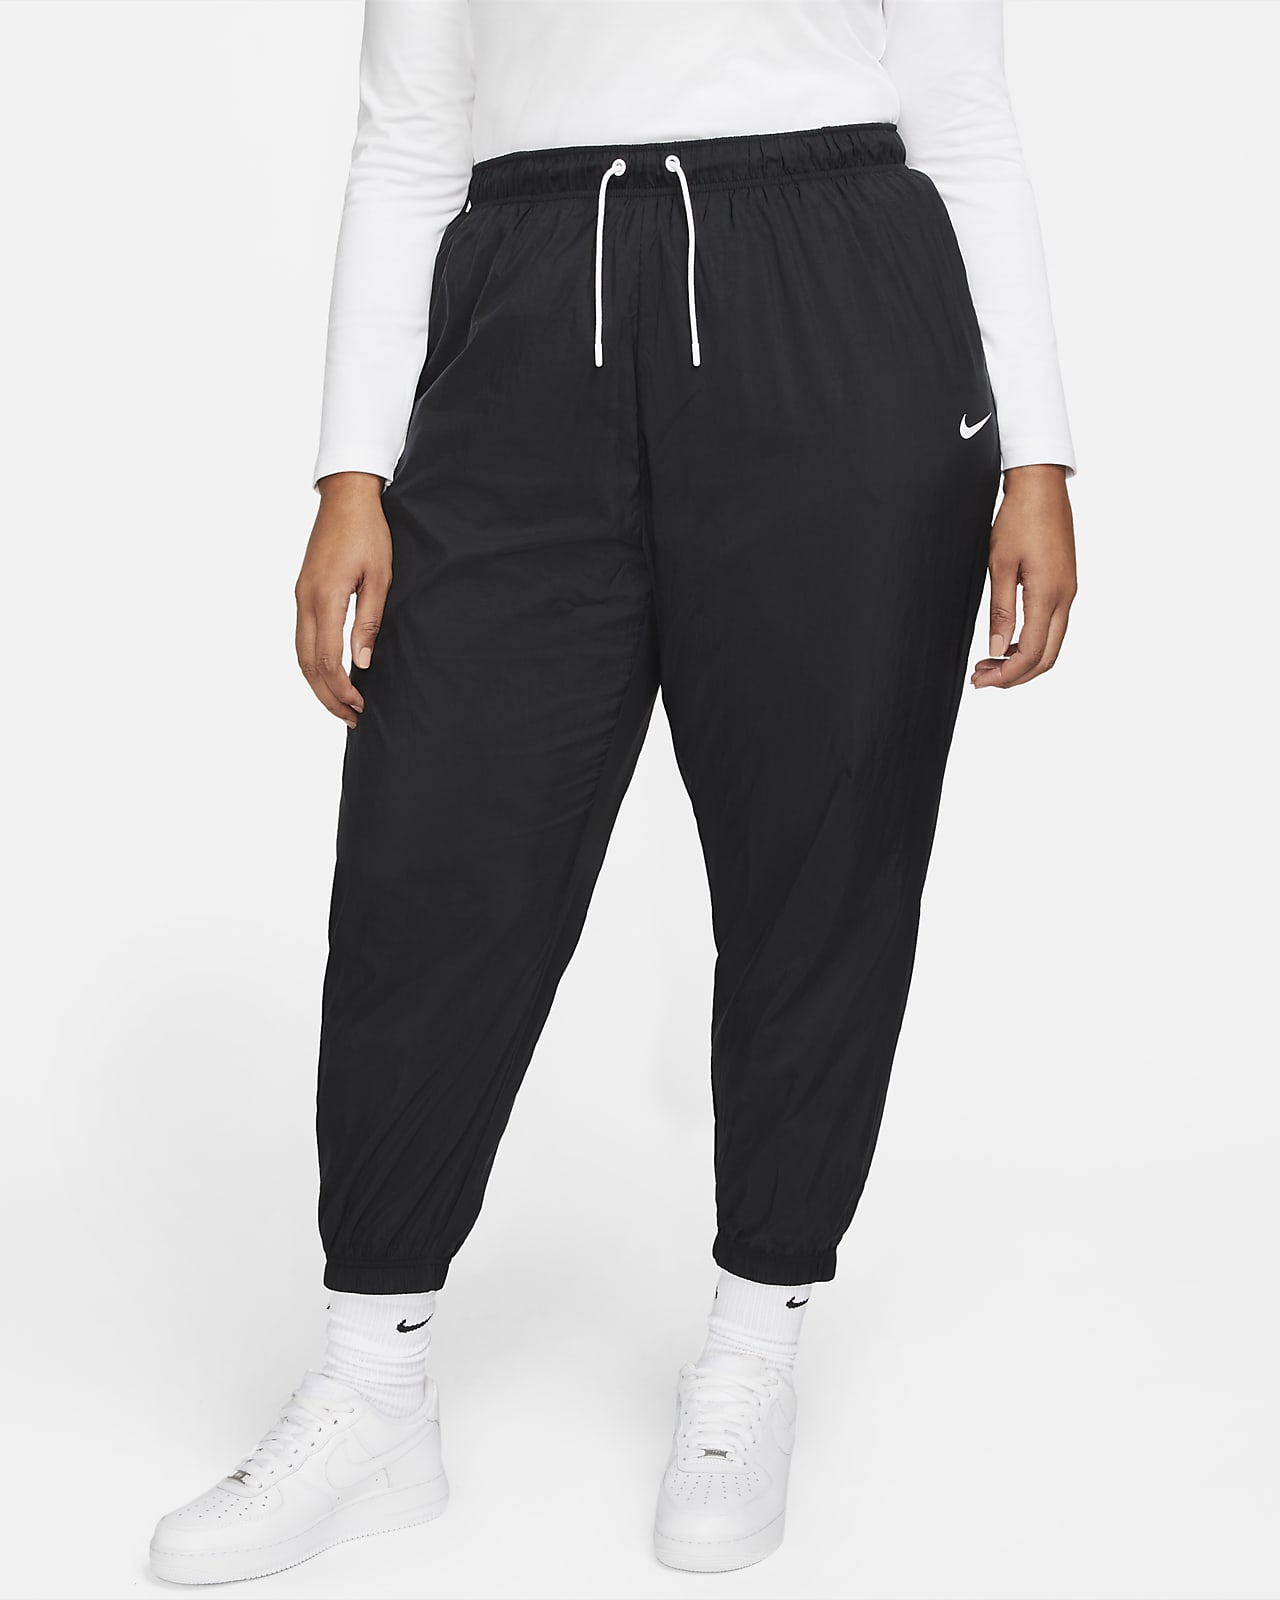 Joggers de tejido Woven oversized para mujer grande Essential. Nike.com